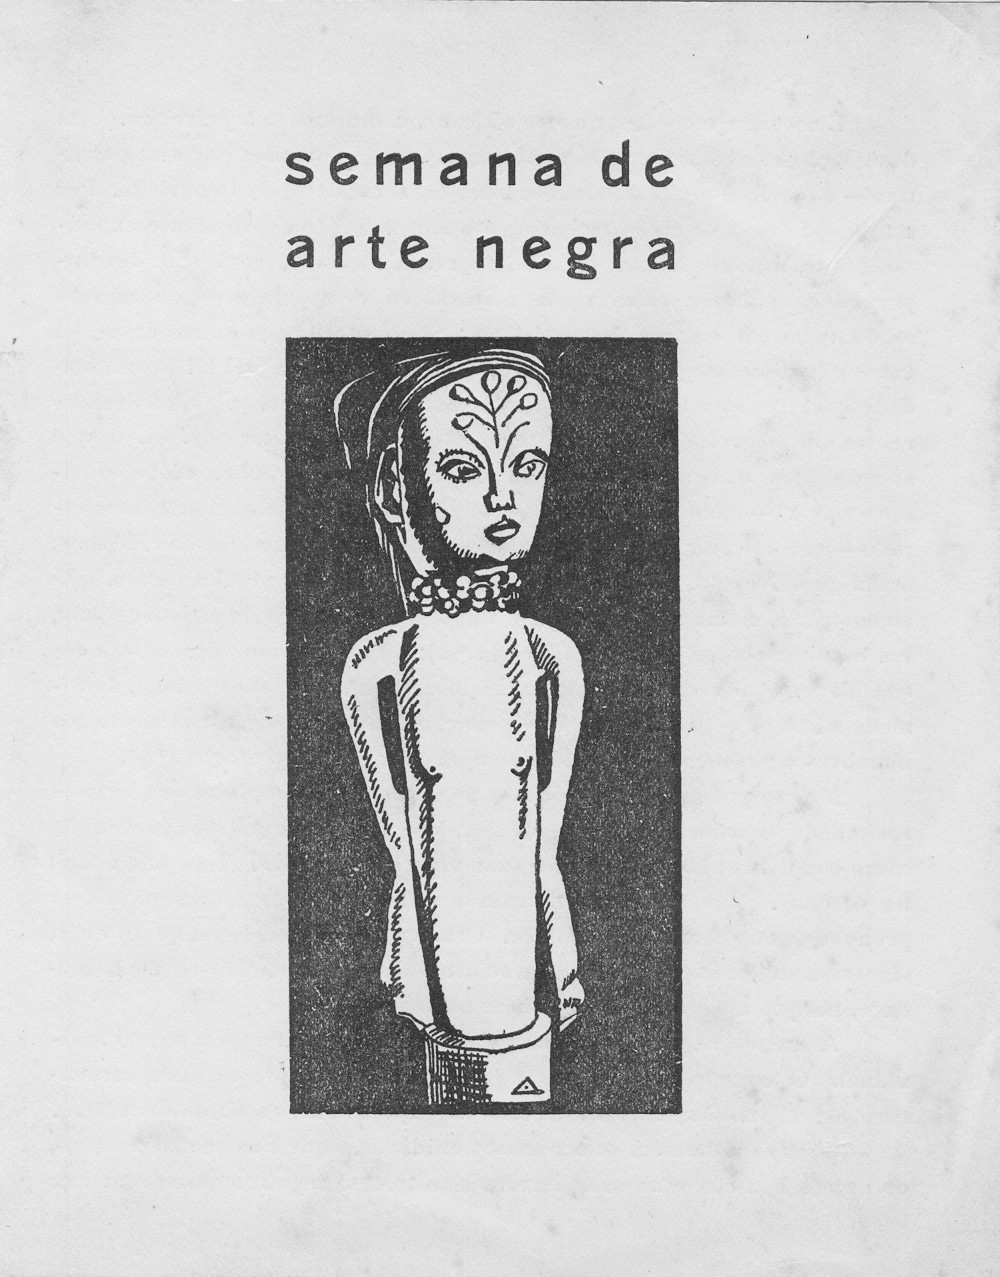  Capa do folheto da exposição na Semana de Arte Negra, 1946. 